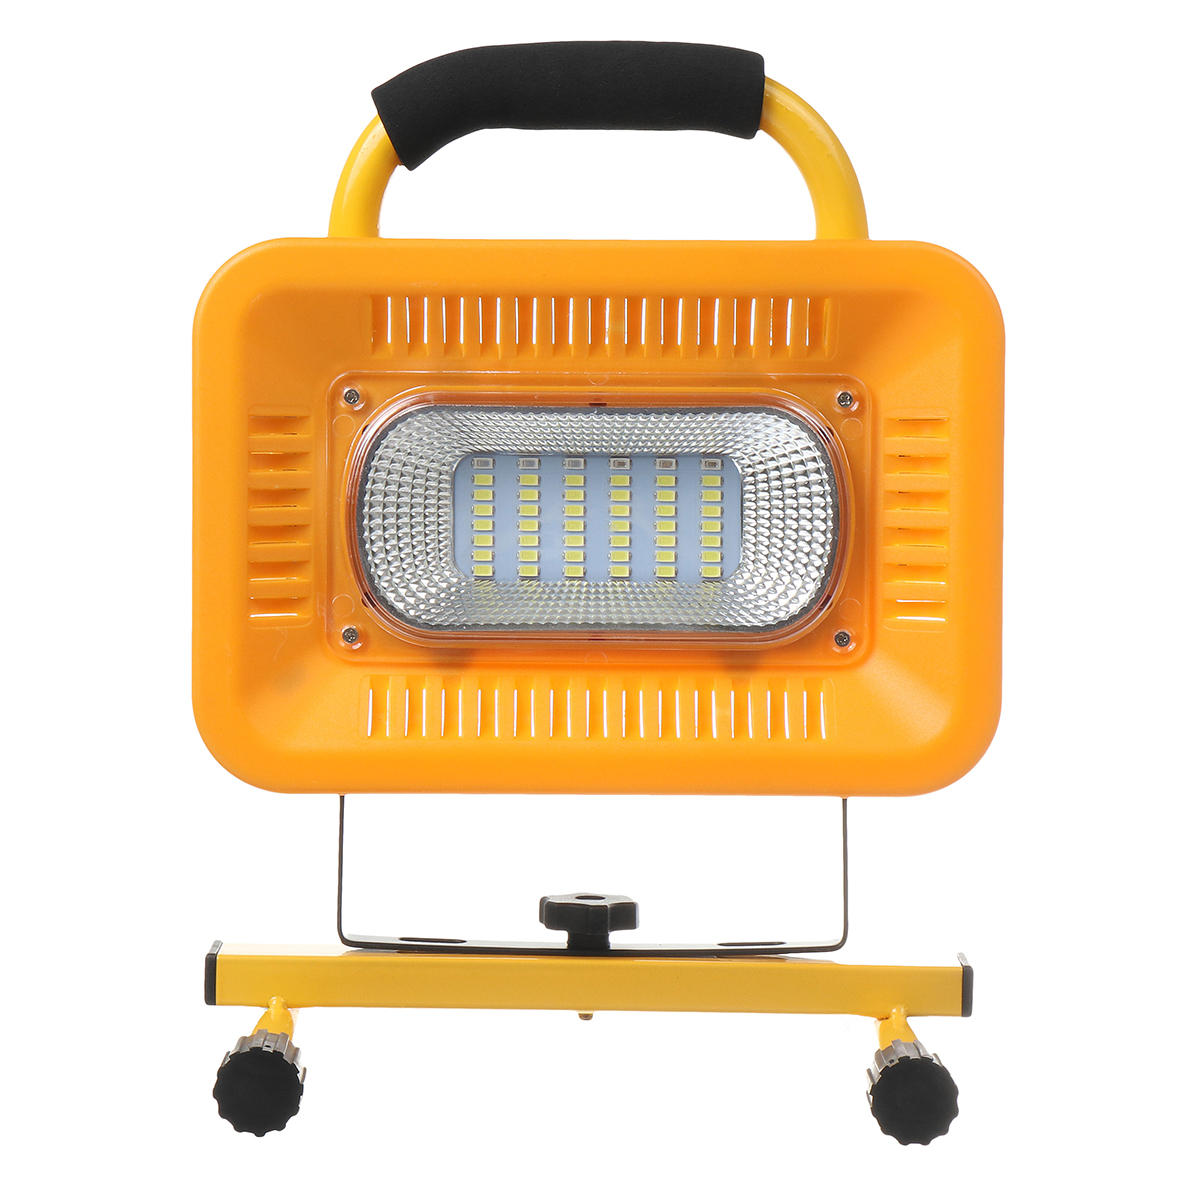 Wasserdichte LED-Campinglampe mit 48 LEDs, 3 Arbeitsmodi, Powerbank für Outdoor-Reisen.